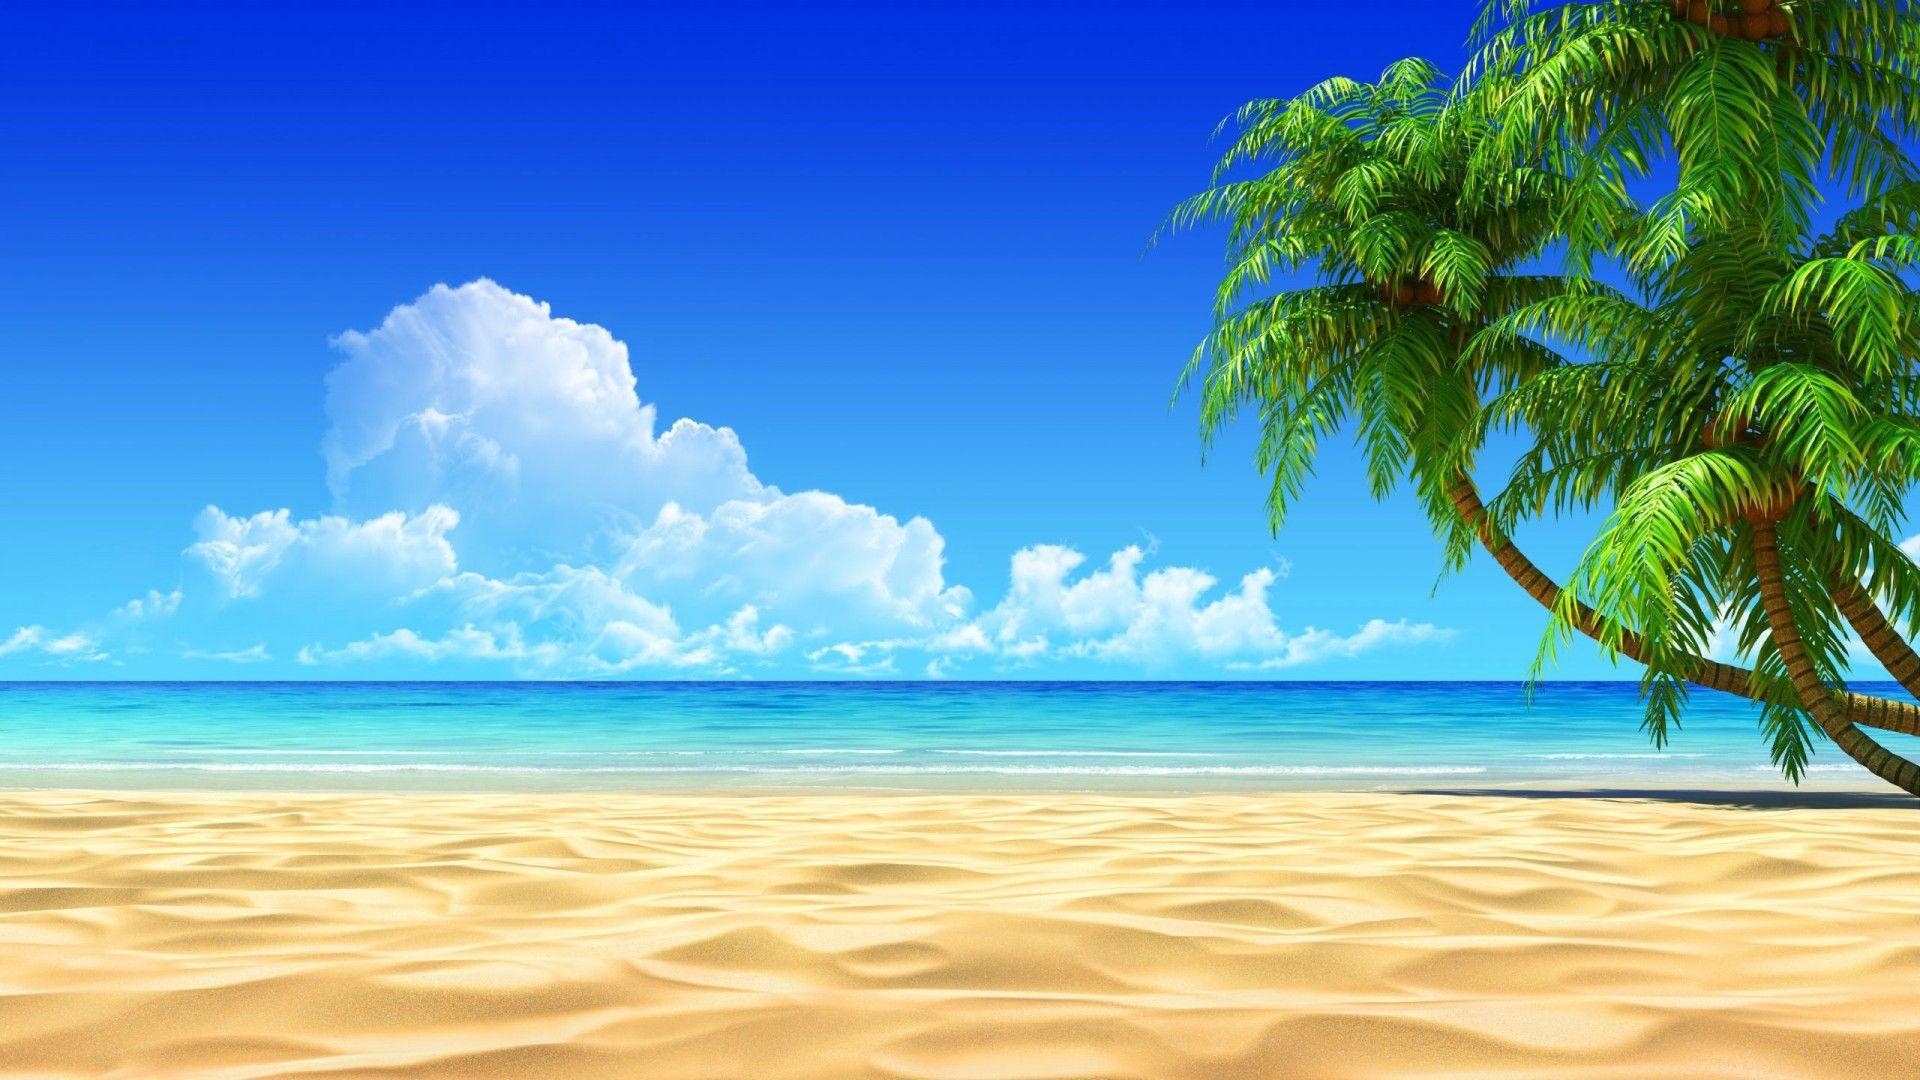 19x1080 Hd Beach Desktop Wallpapers Top Free 19x1080 Hd Beach Desktop Backgrounds Wallpaperaccess